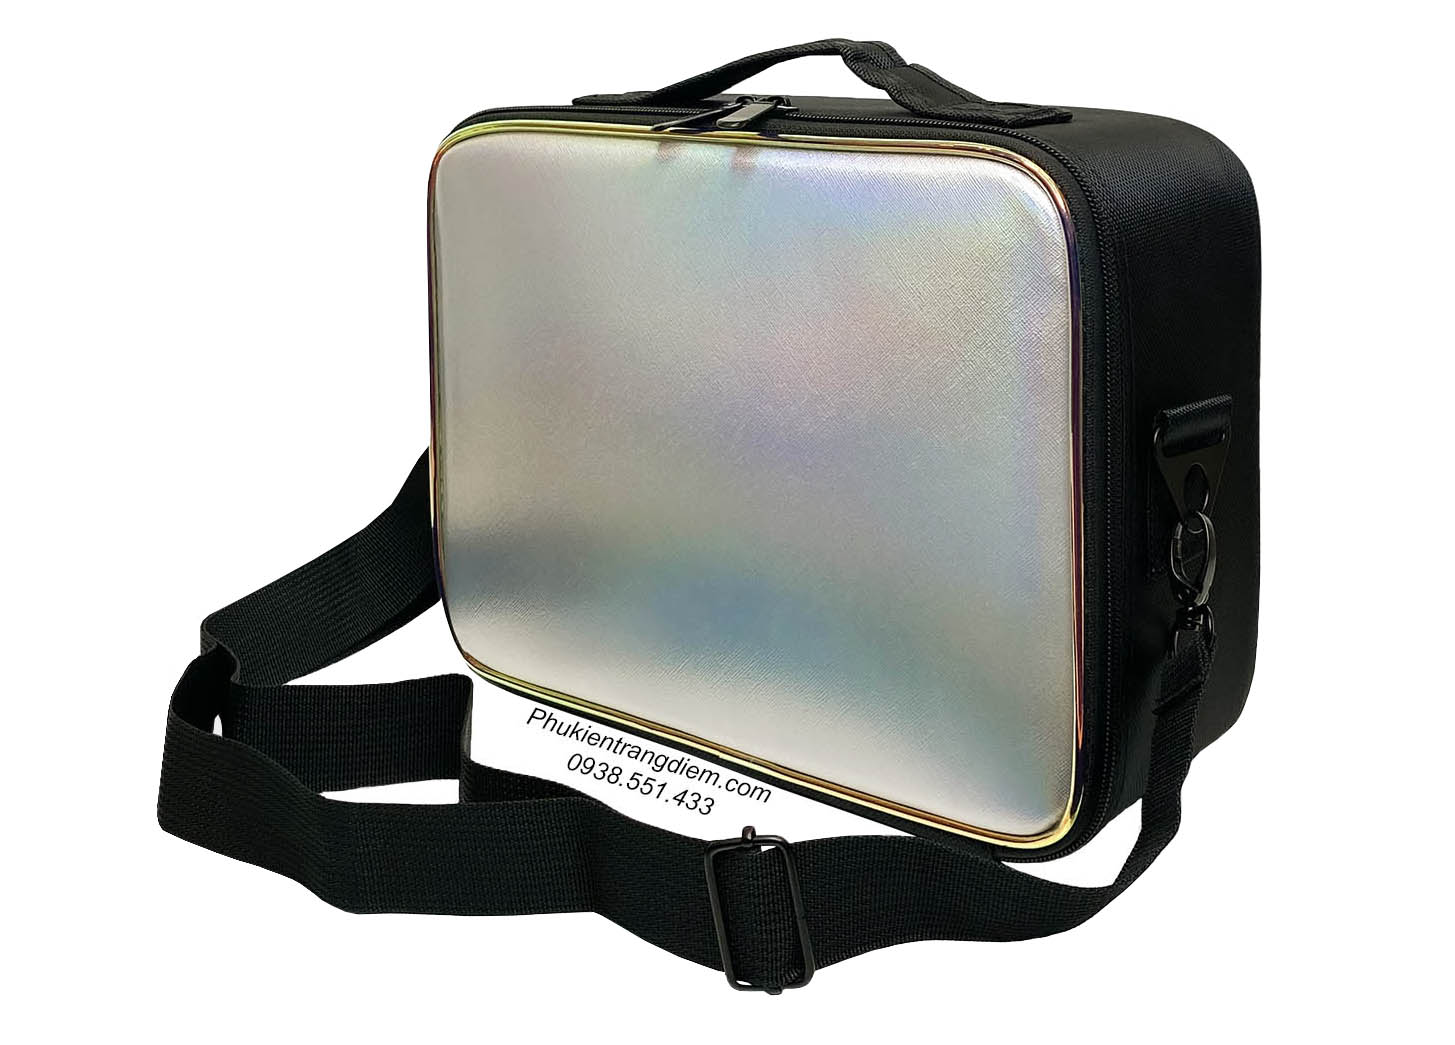 Cốp - túi đựng đồ make up cá nhân vỏ da kèm gương soi có đèn LED sang trọng giá rẻ